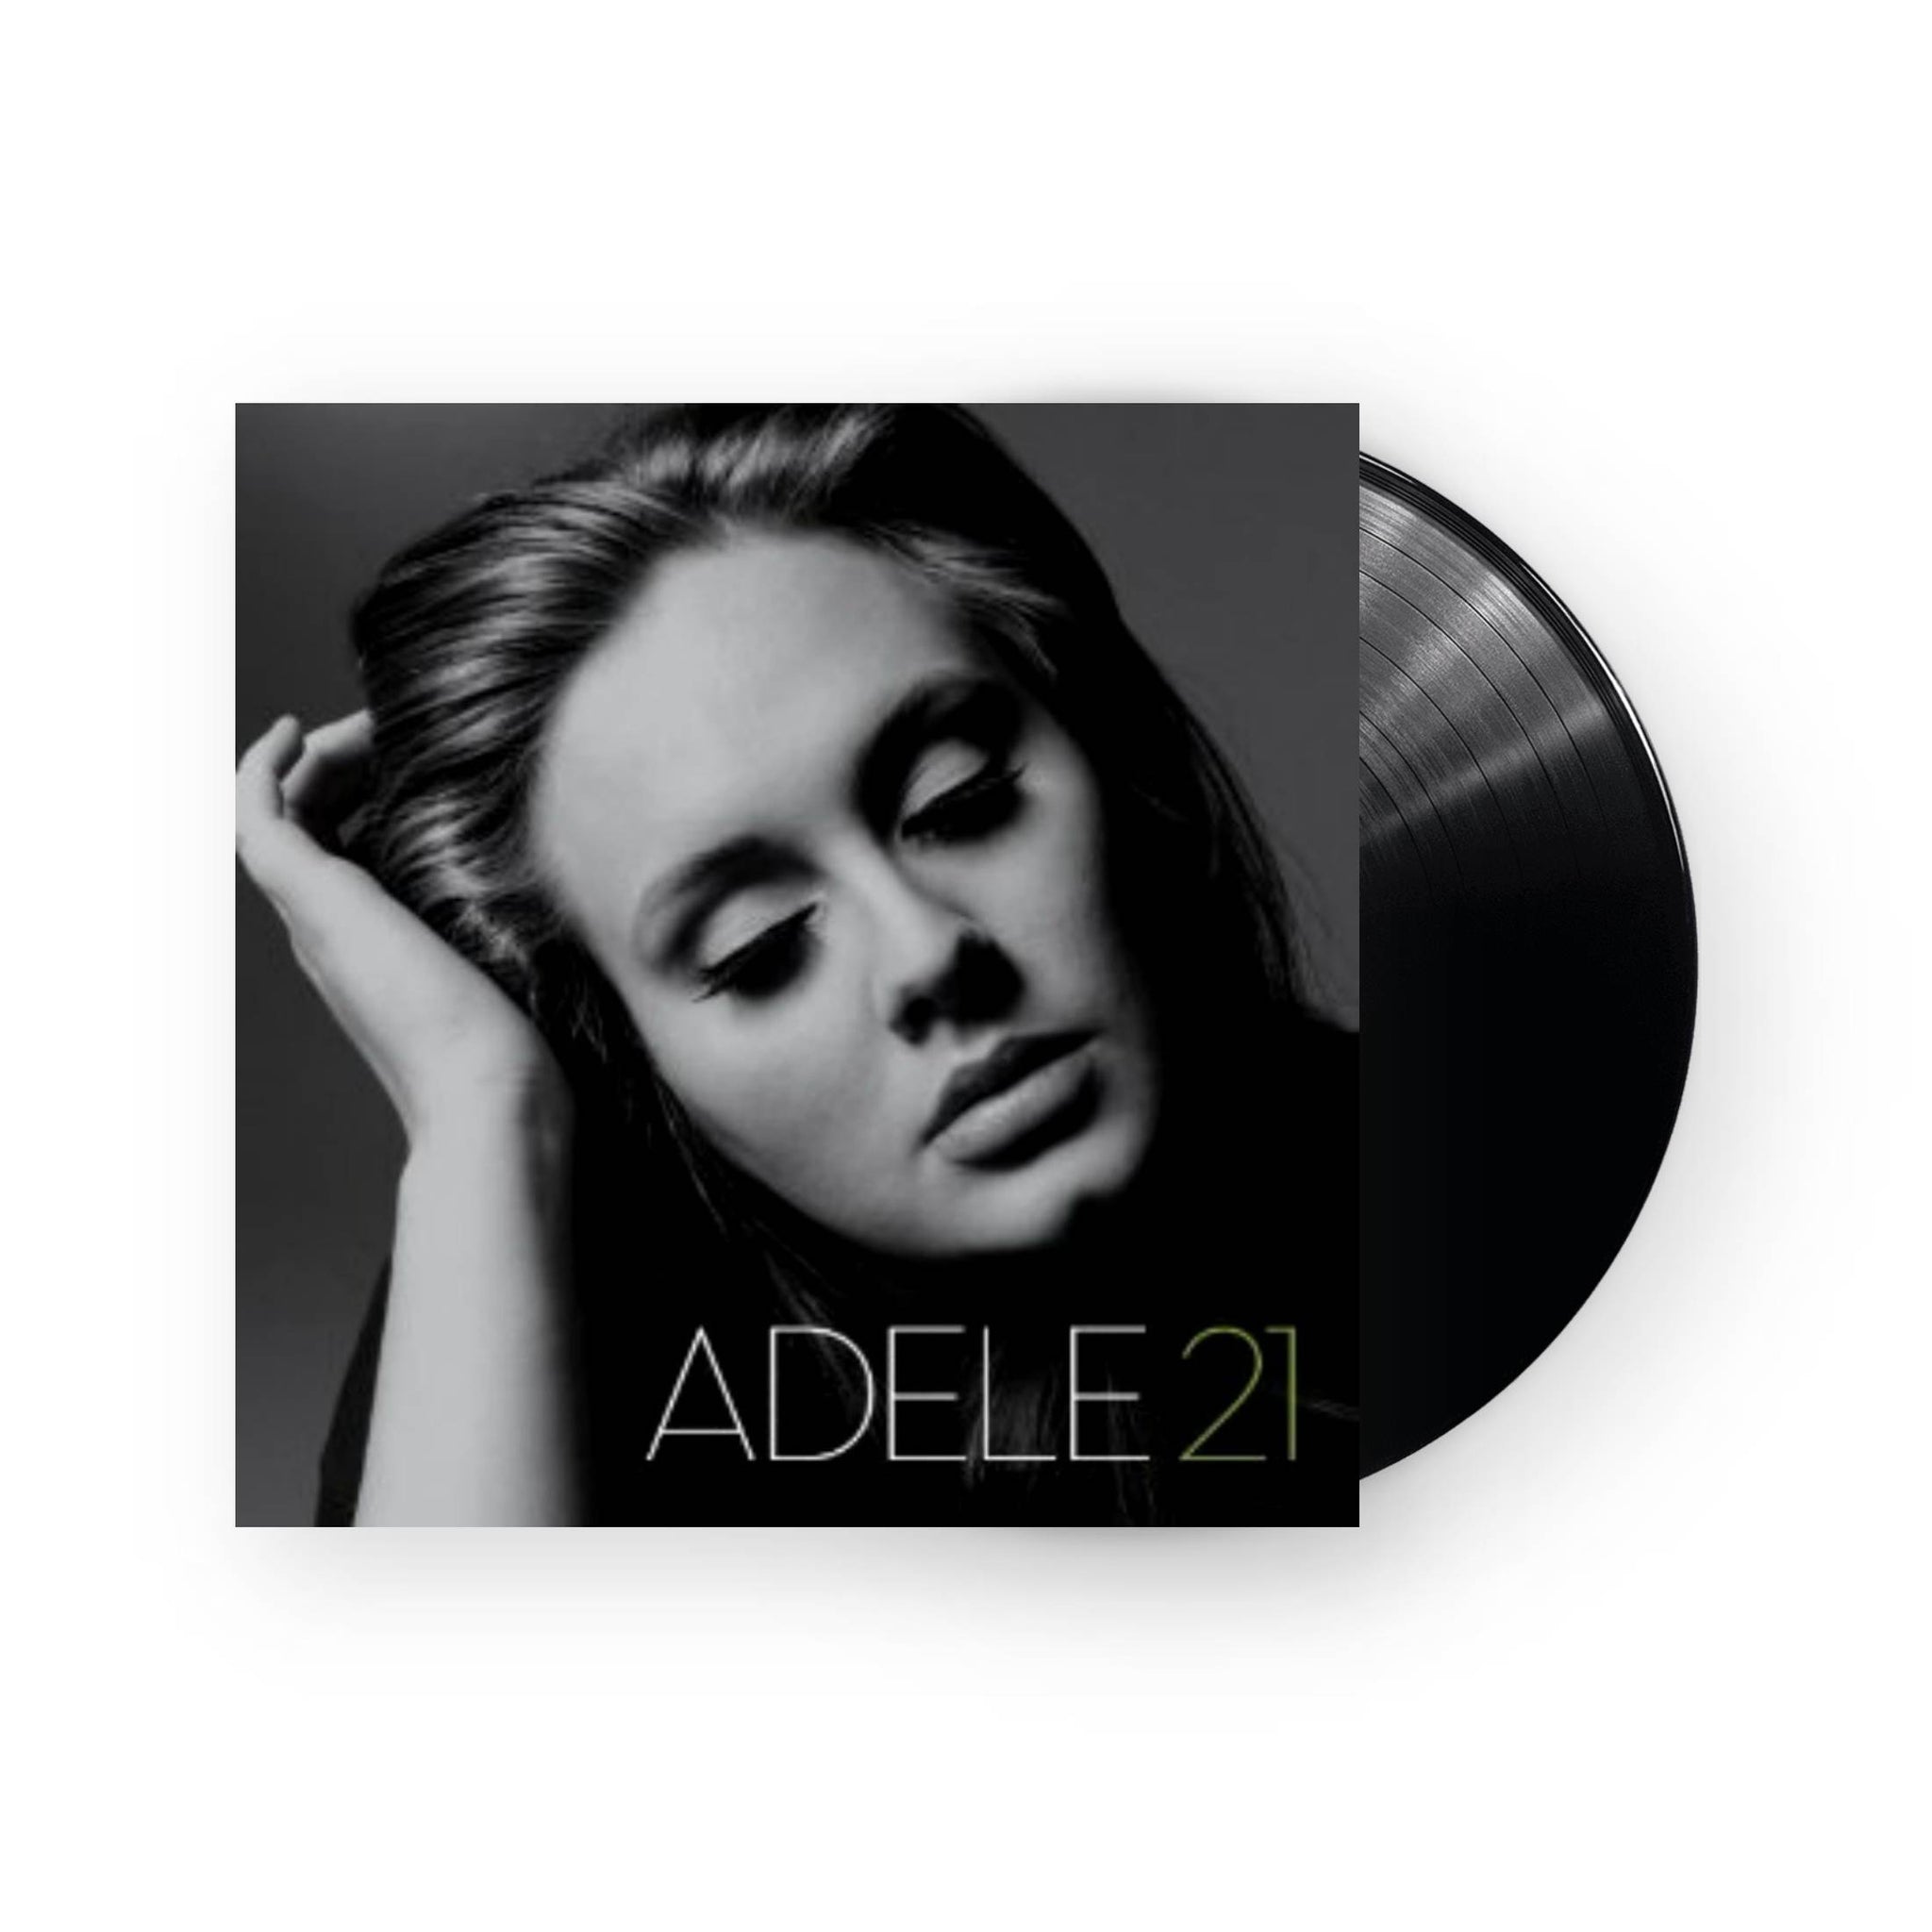 Adele 21 LP Vinyl) – Plastic Stone Records